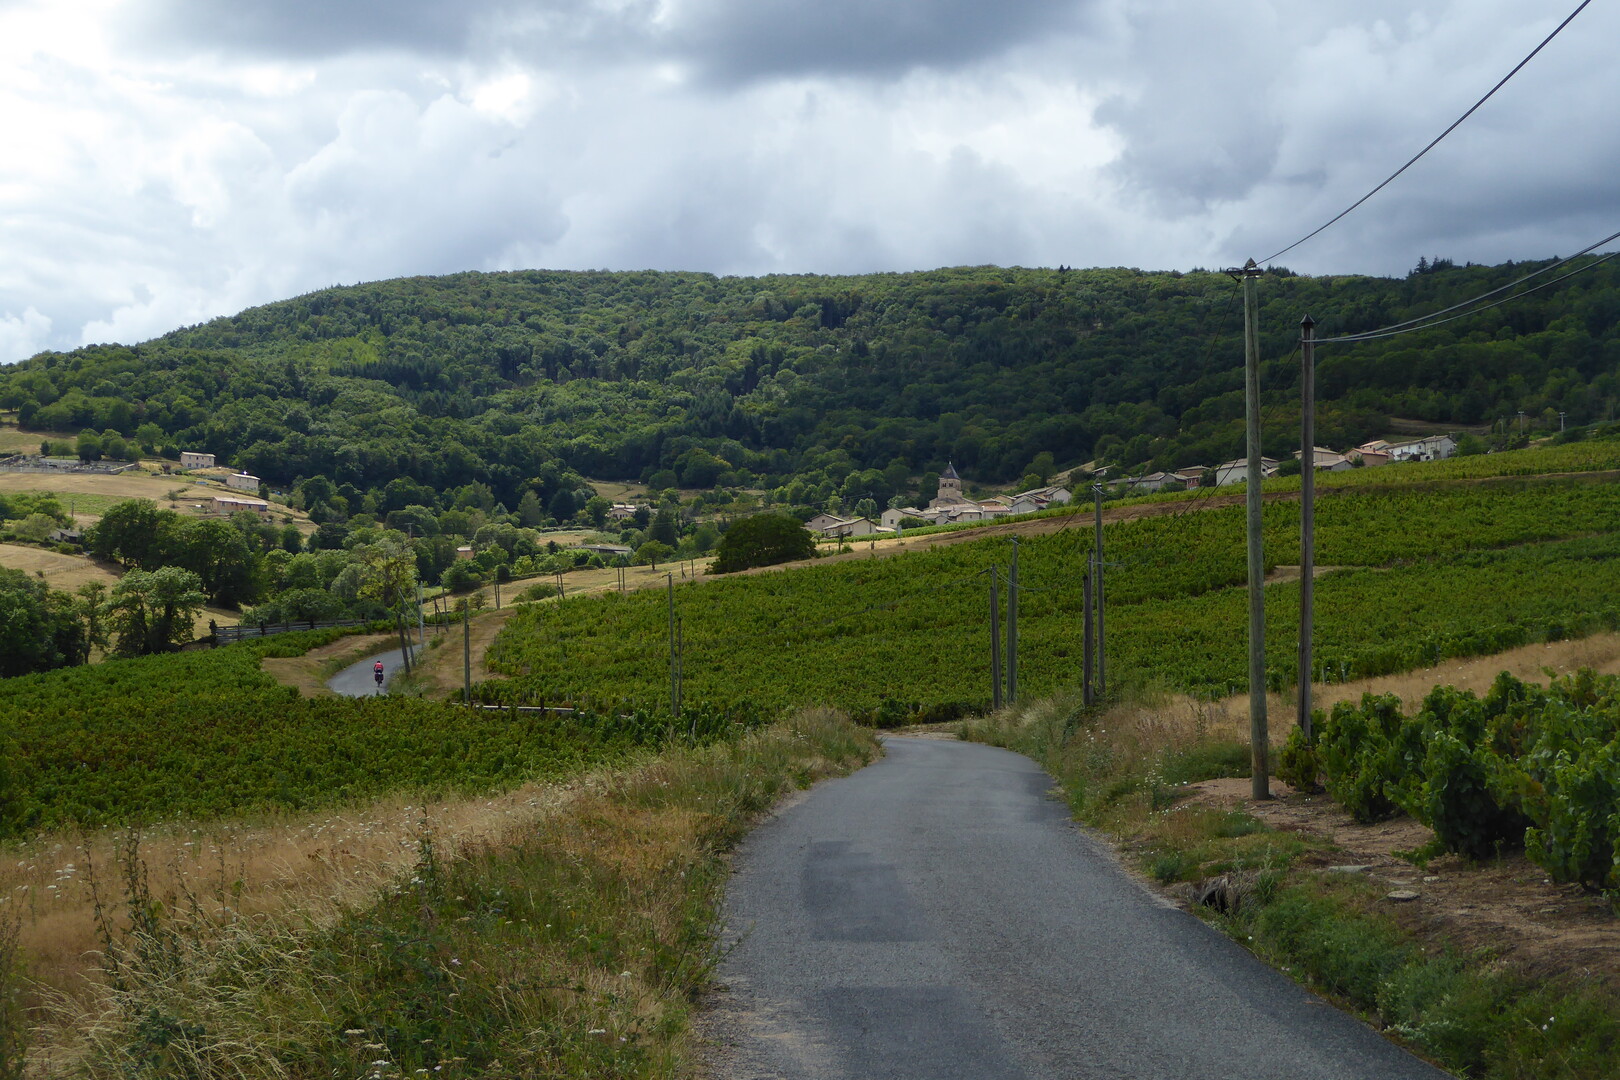 Vauxrenard in Sicht,die Rampe beginnt erst 500 m vor dem Dorf....